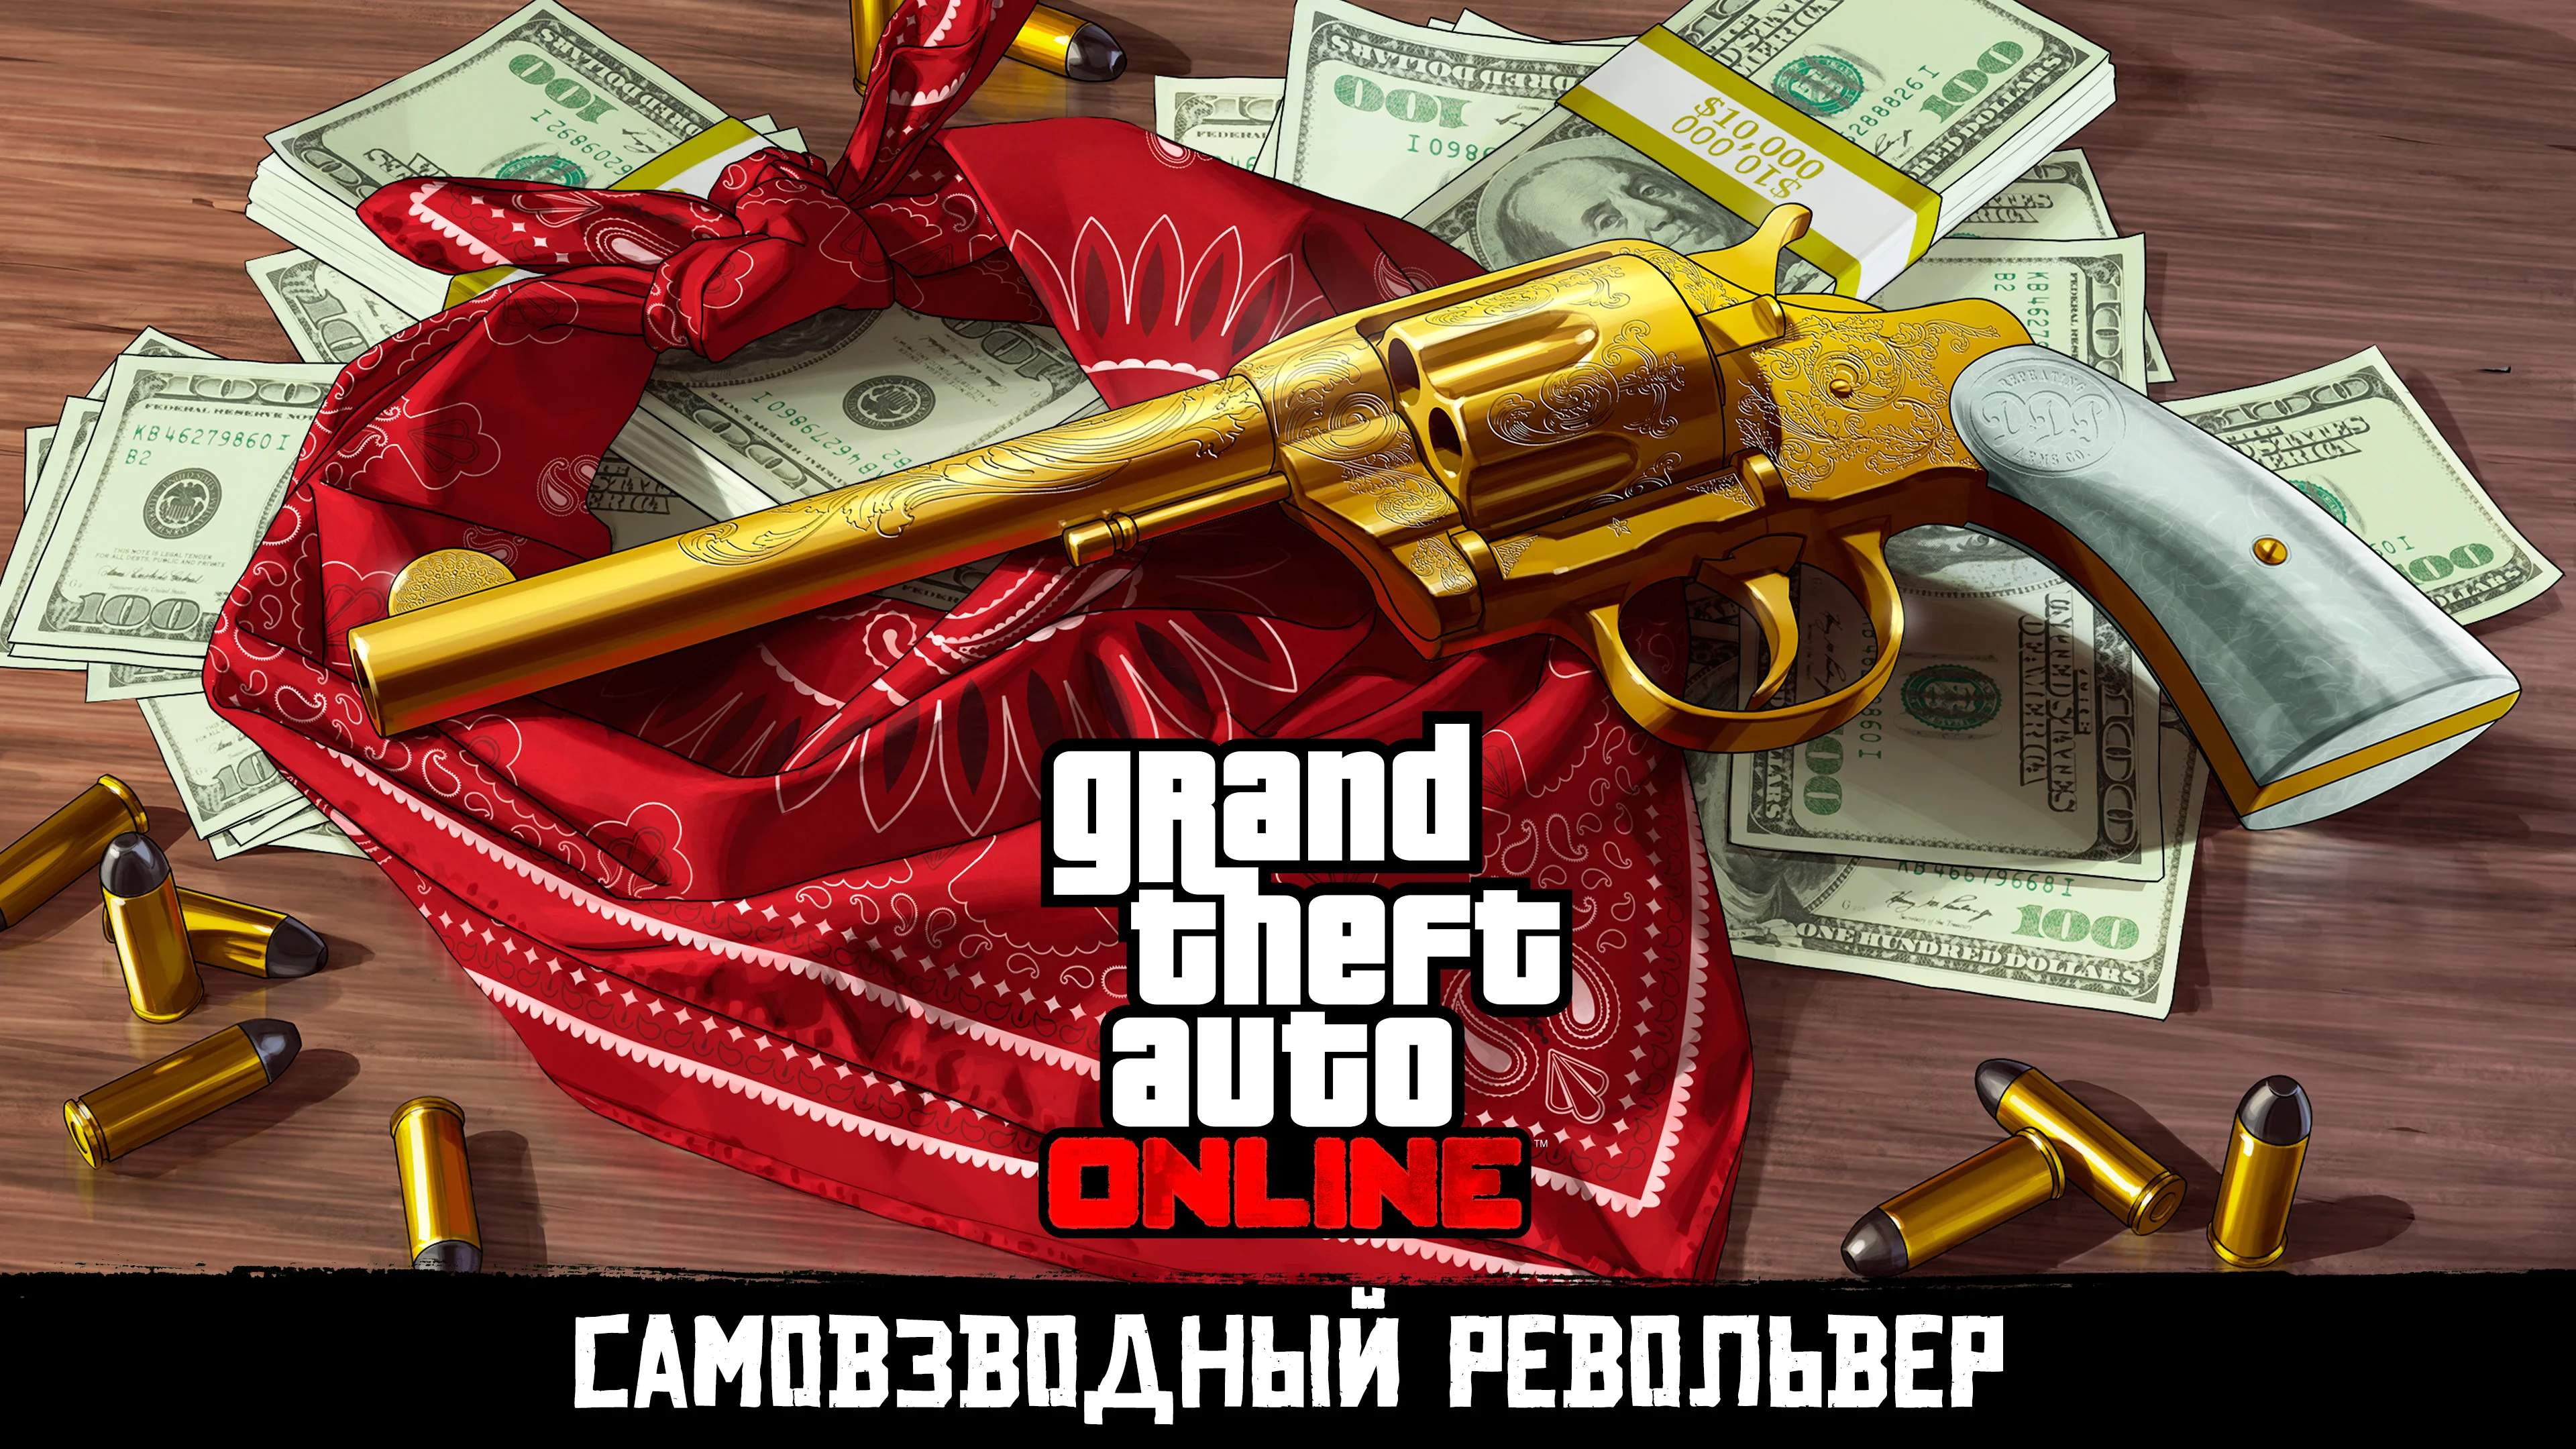 В GTA Online уже можно получить револьвер для будущей Red Dead Redemption 2 - фото 1